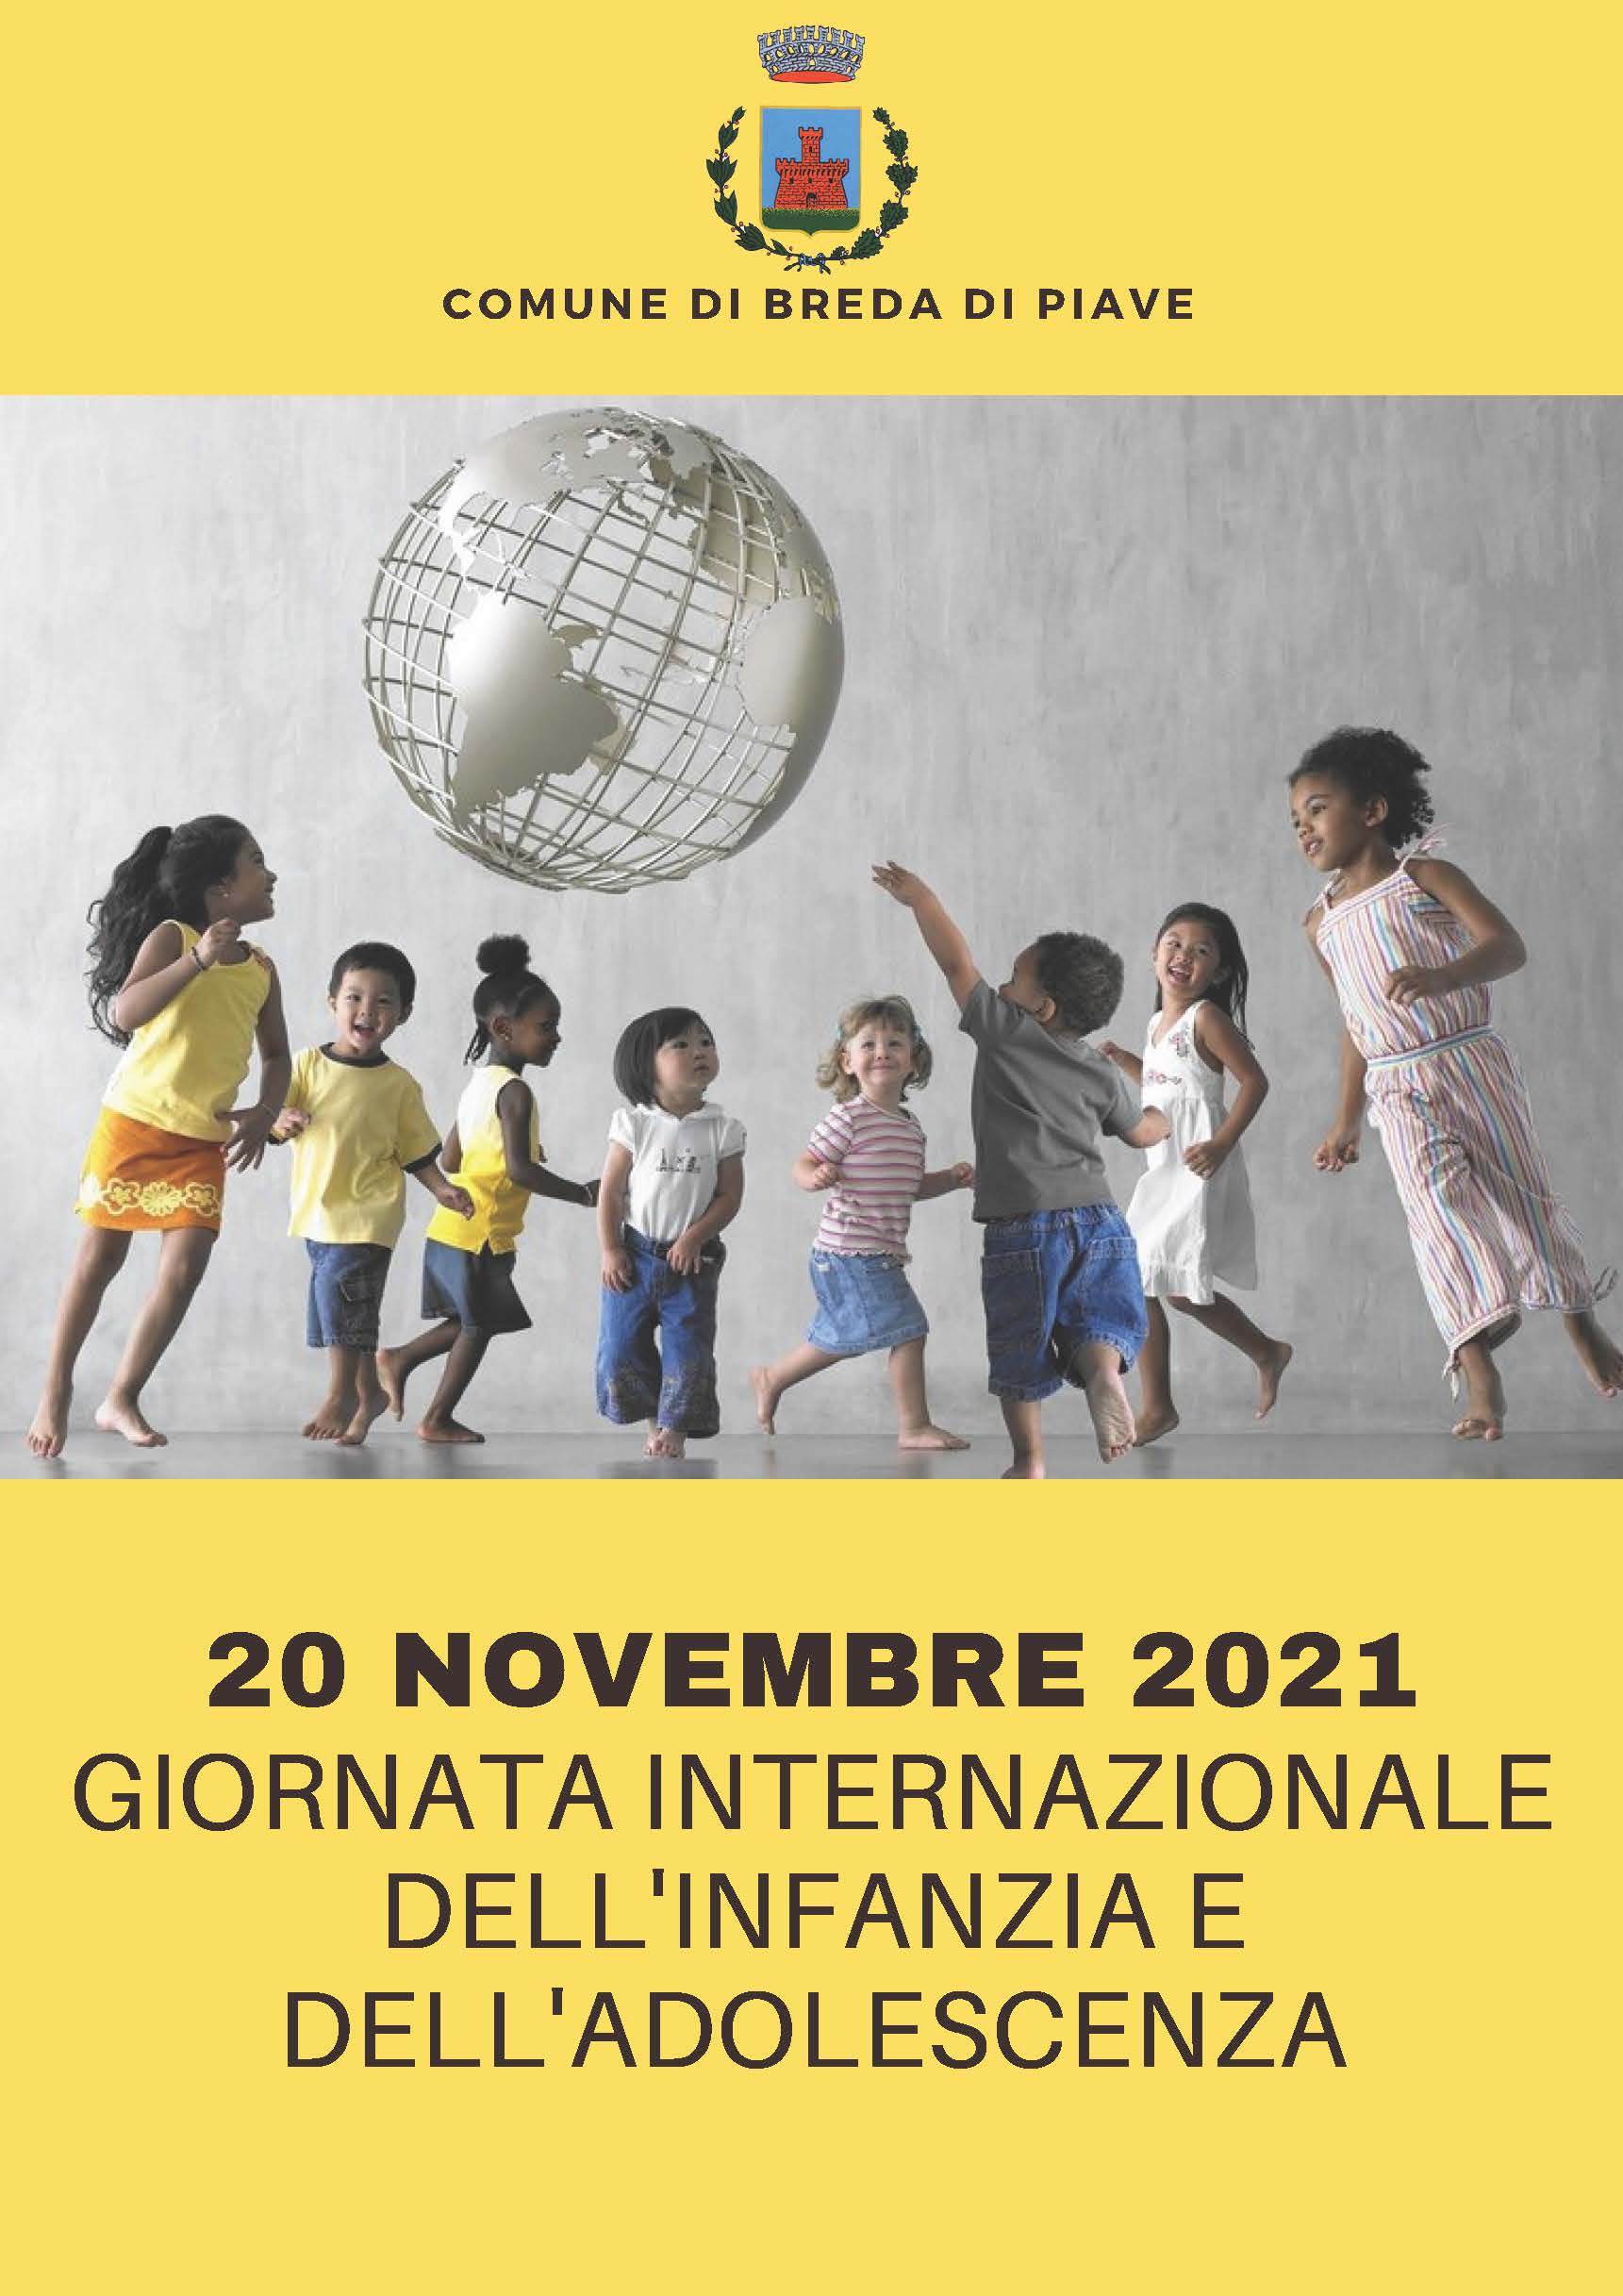 20 novembre: Giornata internazionale dell'infanzia e dell'adolescenza